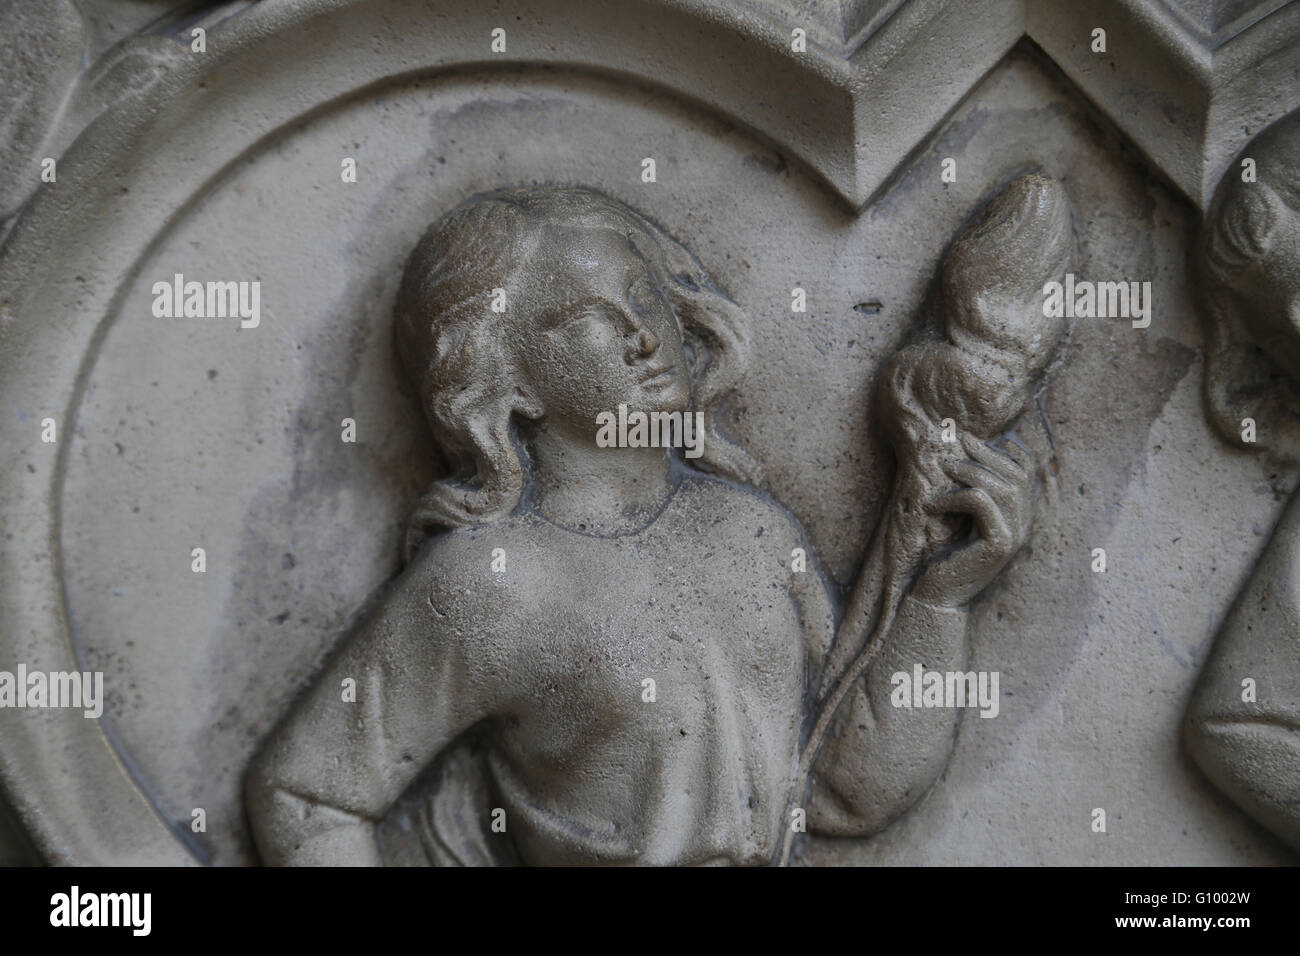 Le soulagement. La genèse. Eve la filature. 13e c. Base du portail de la chapelle supérieure. La Sainte-Chapelle, Paris, France. Banque D'Images